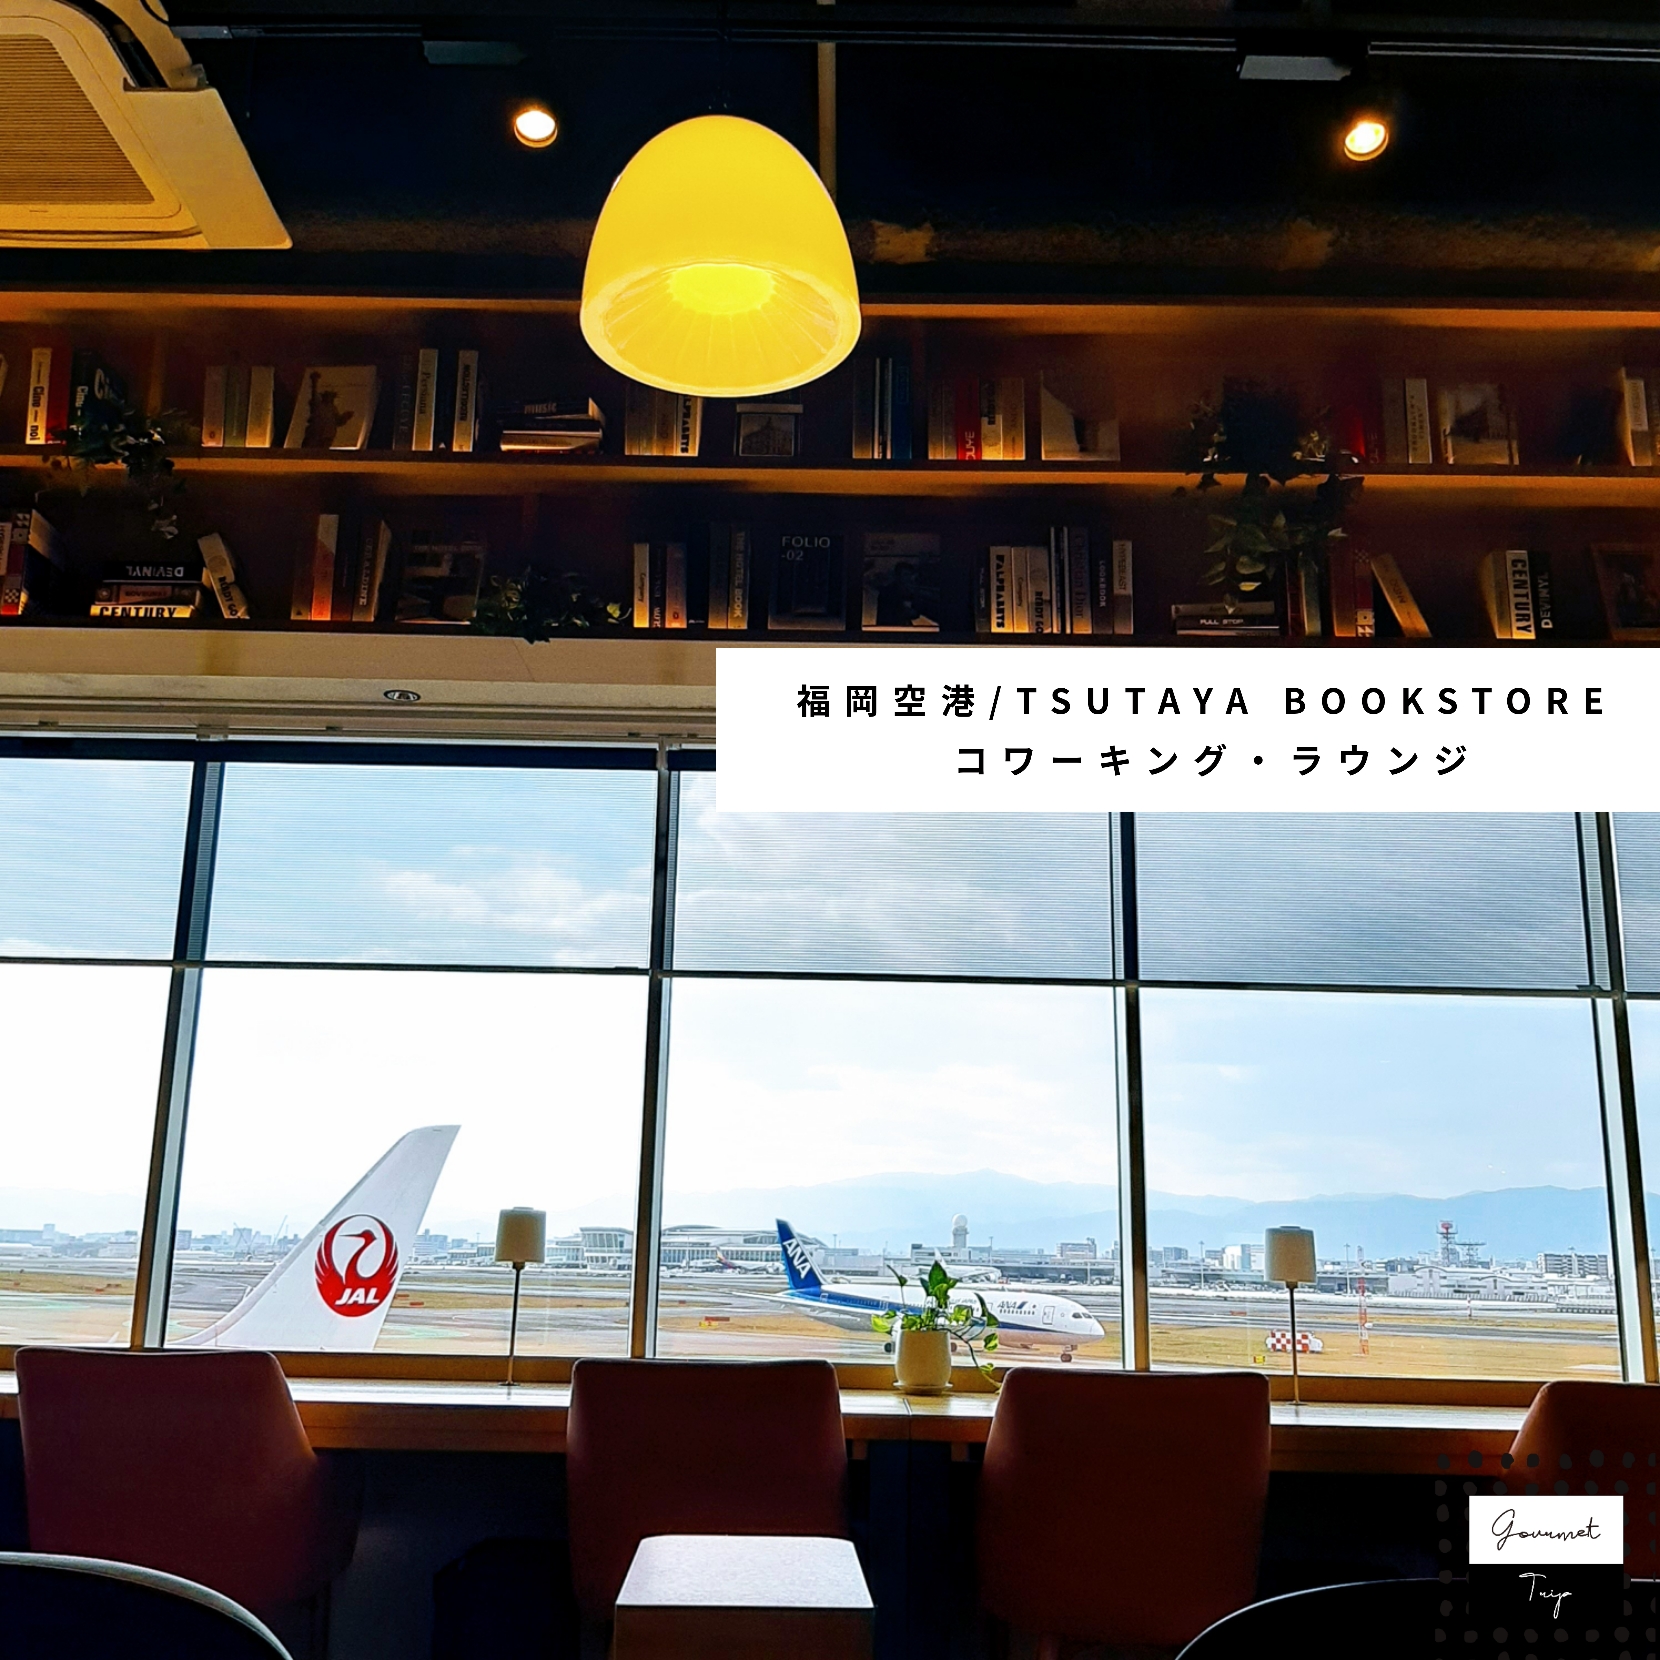 ドトールコーヒーショップ 福岡空港国内線ゲート内店 はやかけんの話 福岡 博多 グルメトリップ